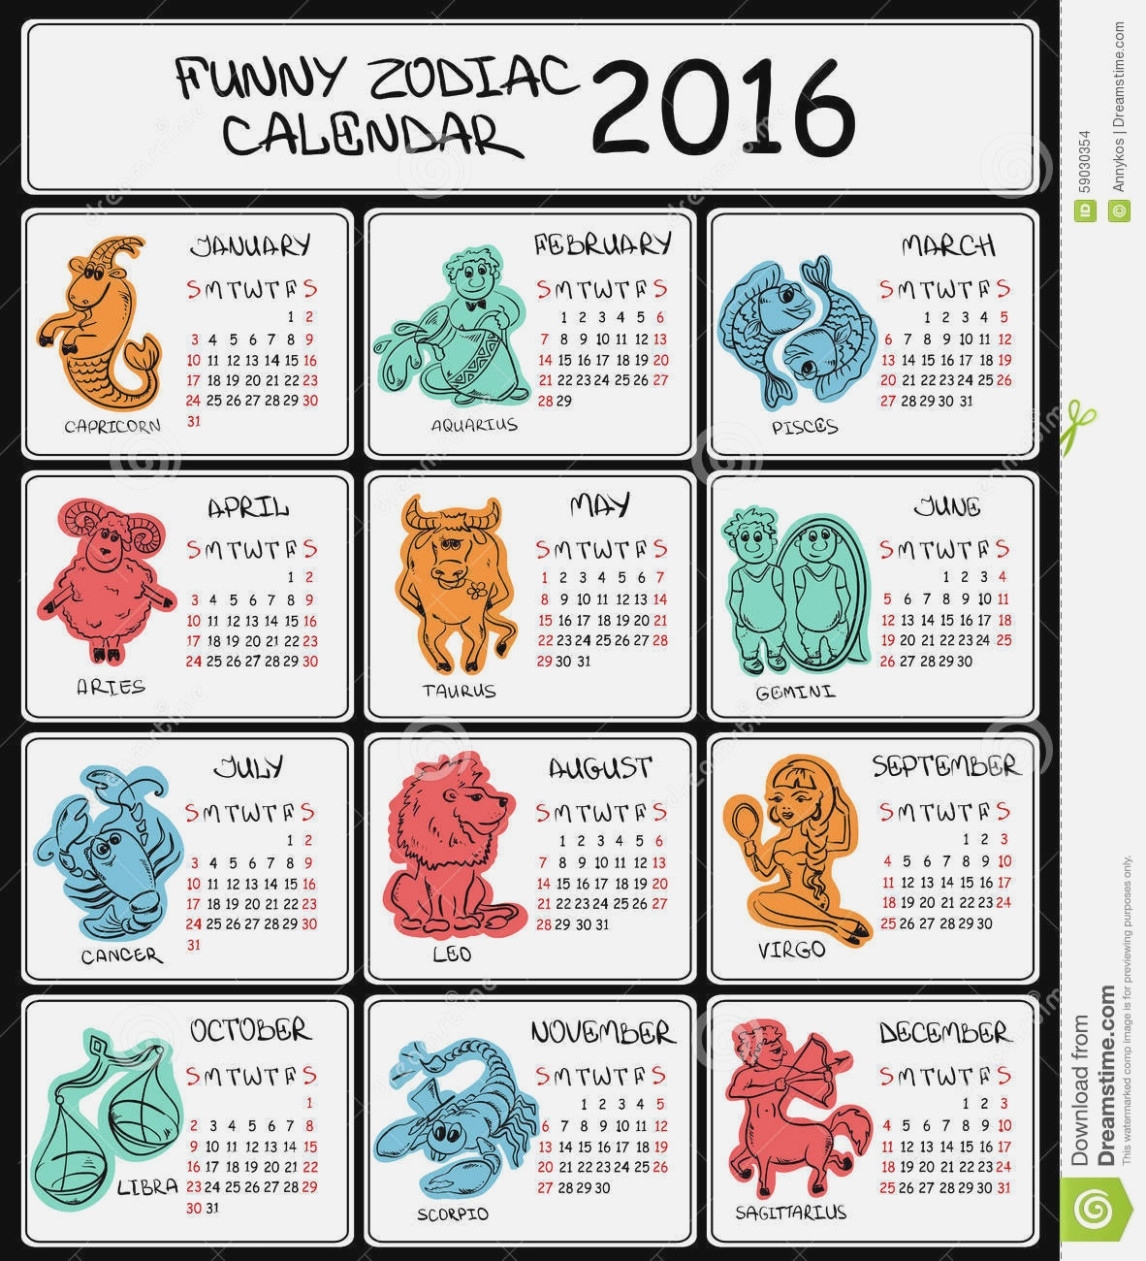 15 Zodiac Chart Dates Rituals You Should | Chart Information Calendar Dates Of Zodiac Signs